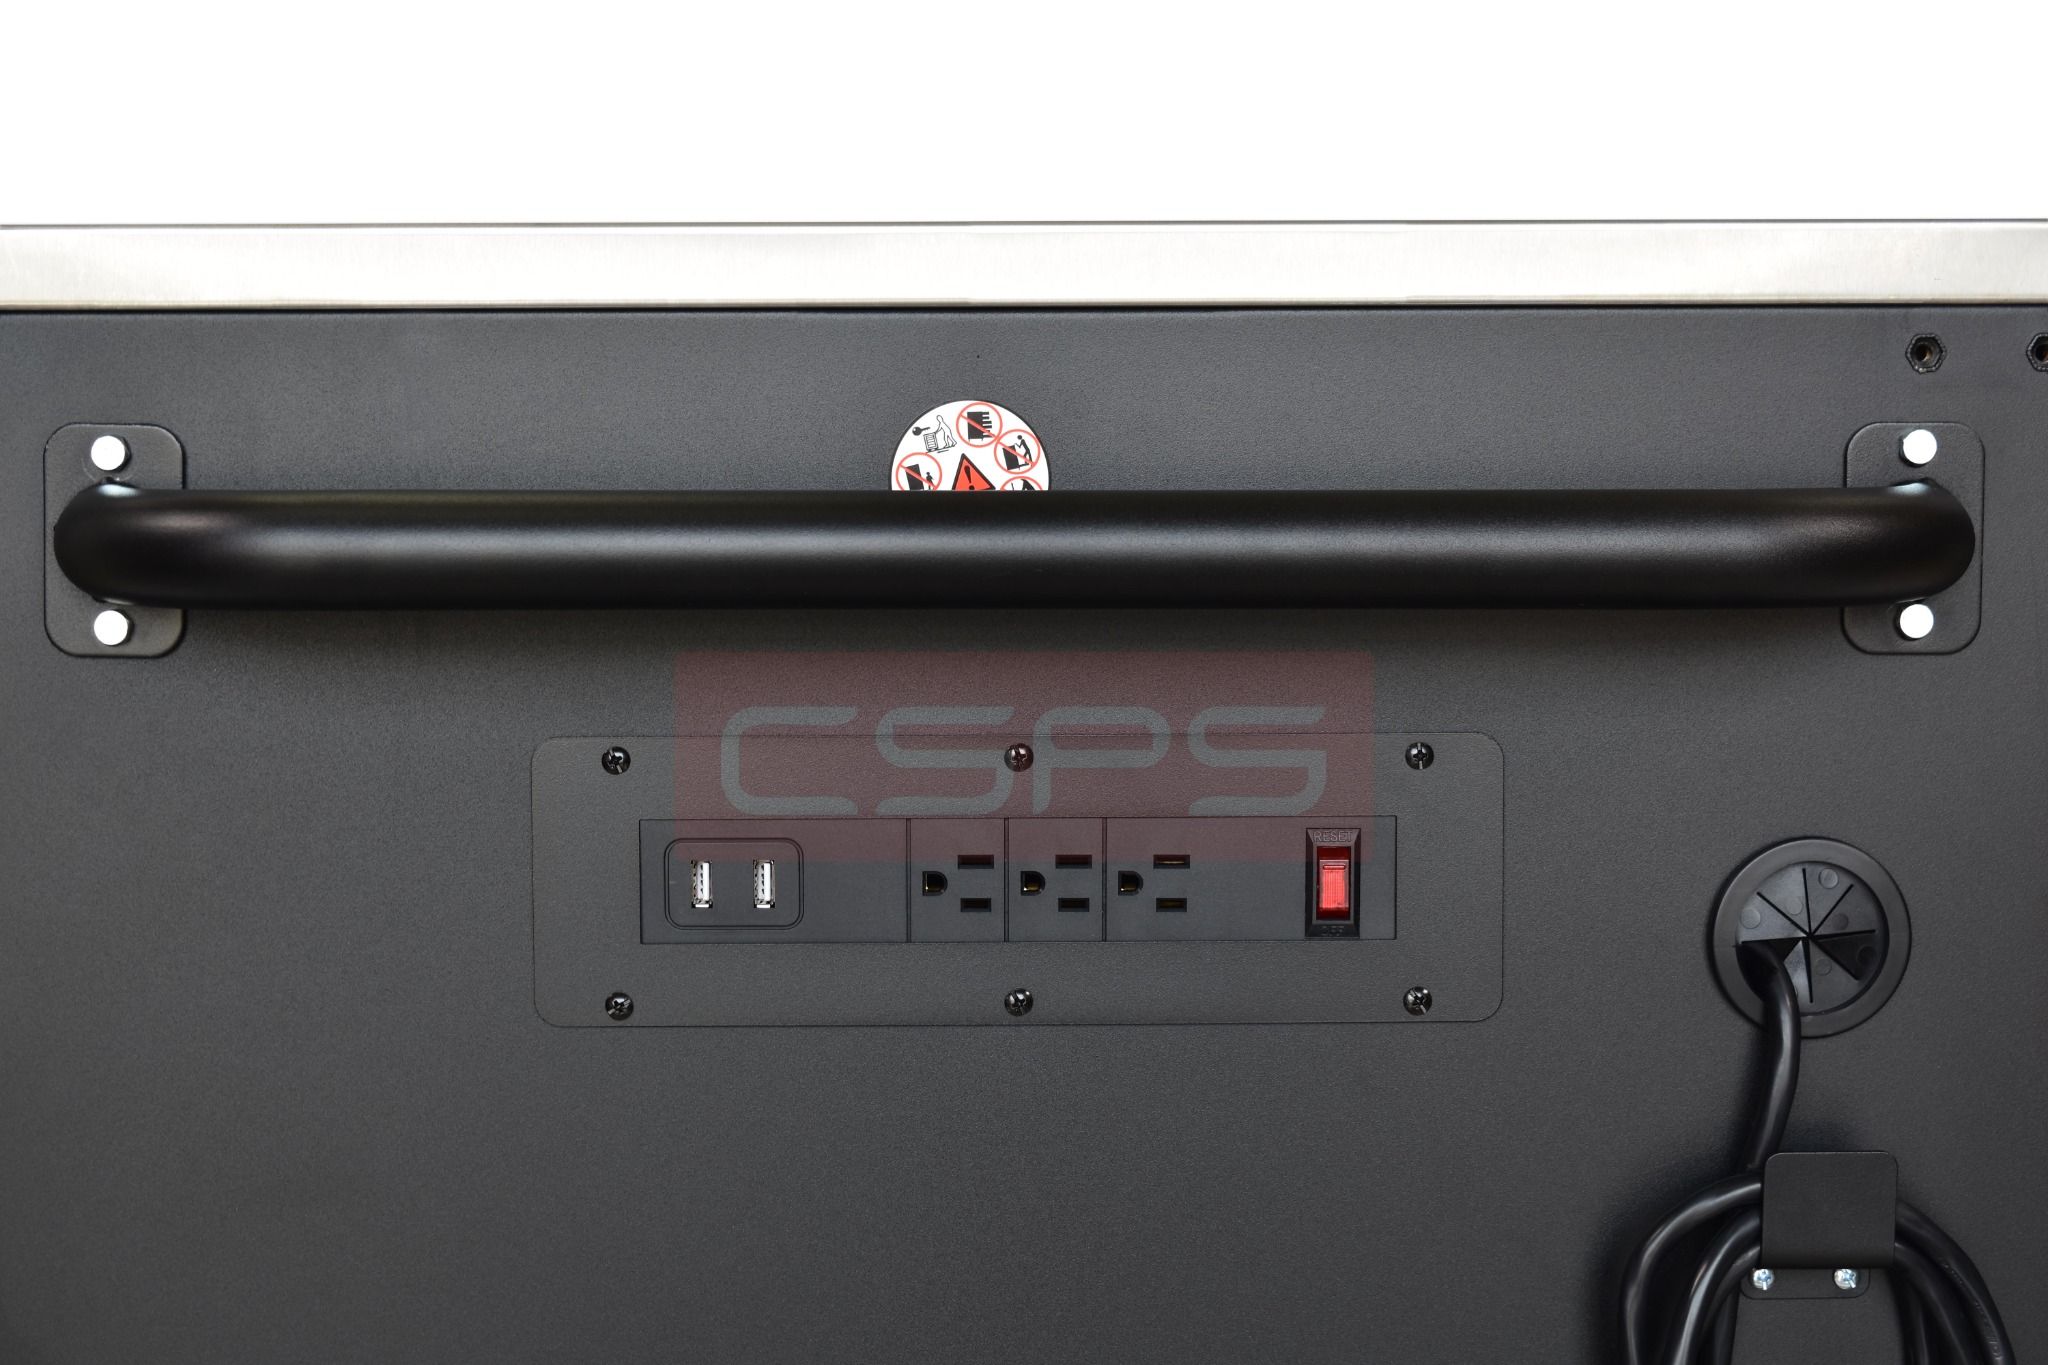  Tủ dụng cụ CSPS 132cm - 05 hộc kéo màu đen/trắng 